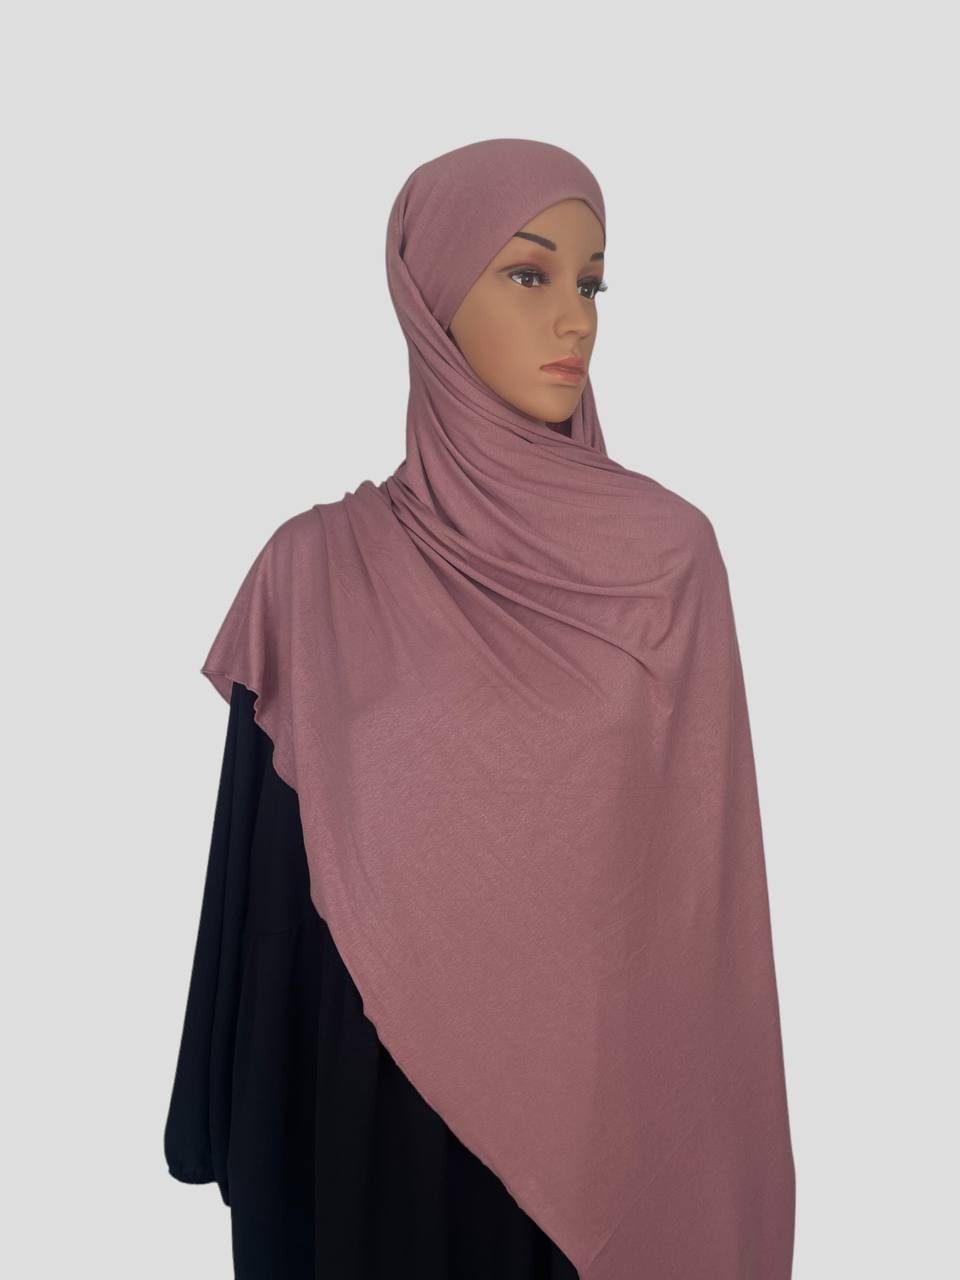 Aymasal Kopftuch XXL Jersey luxuriance Hijab mit integriertem Bone Scarf Kopftuch, Extra lang, 190x80, Bequem durch integrierten Bonet